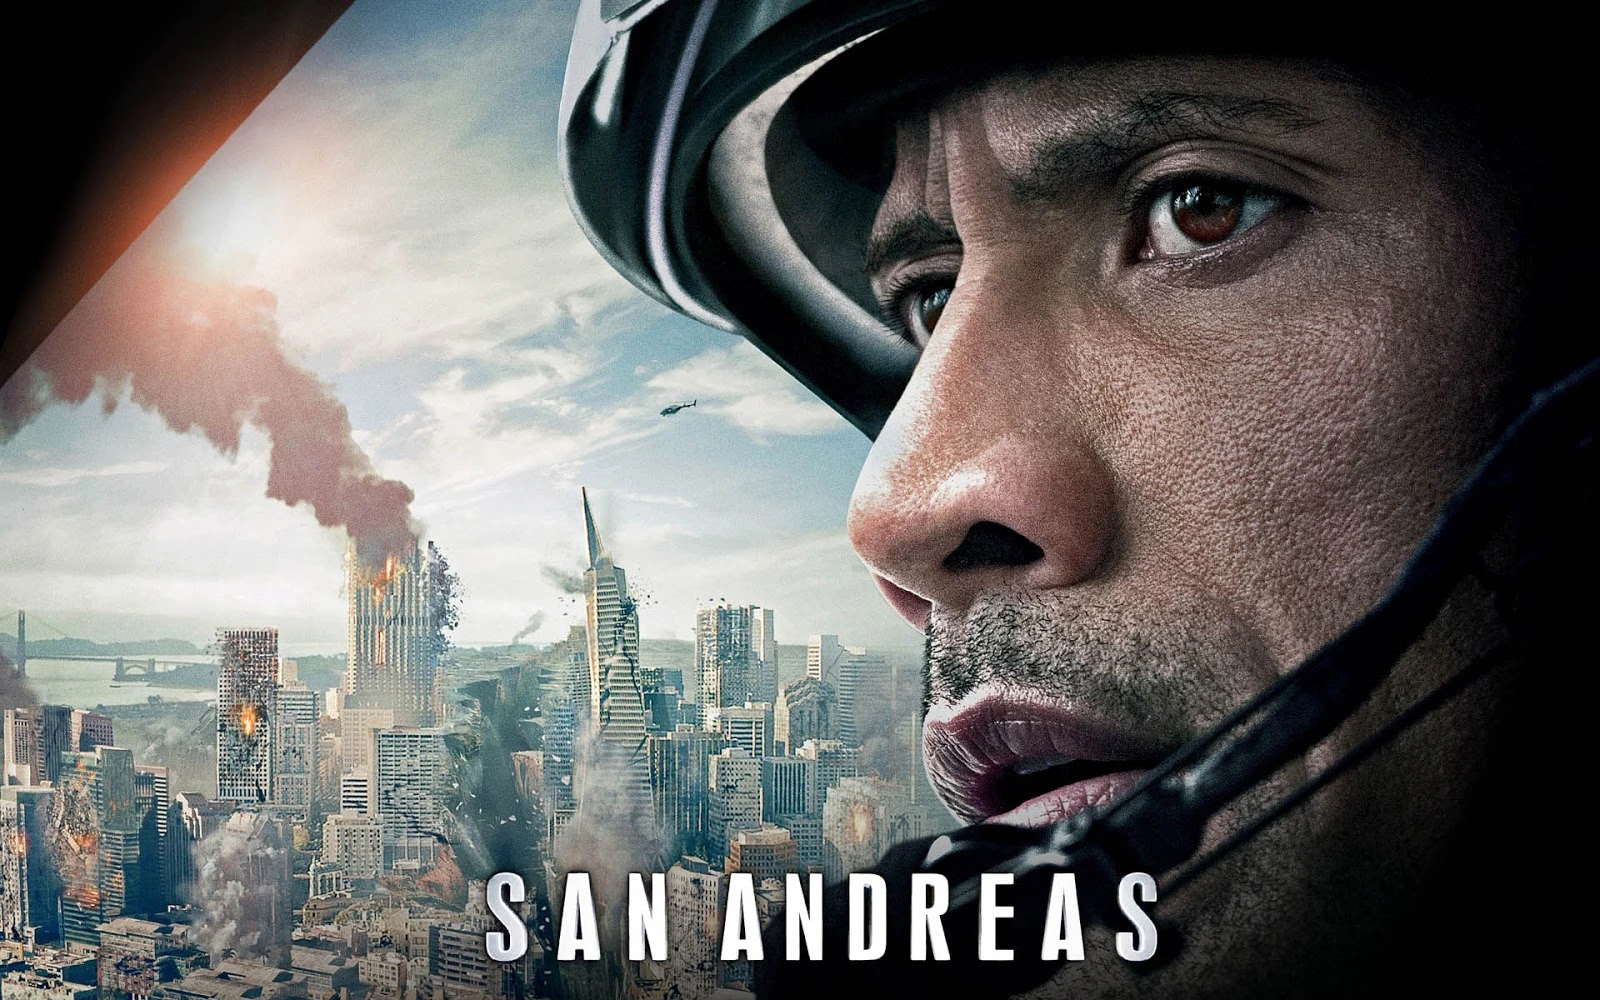 Um dos maiores filmes de 2016, Terremoto: A Falha de San Andreas, poderá ter uma sequência e, o produtor já uma ideia do que fazer. Confira!